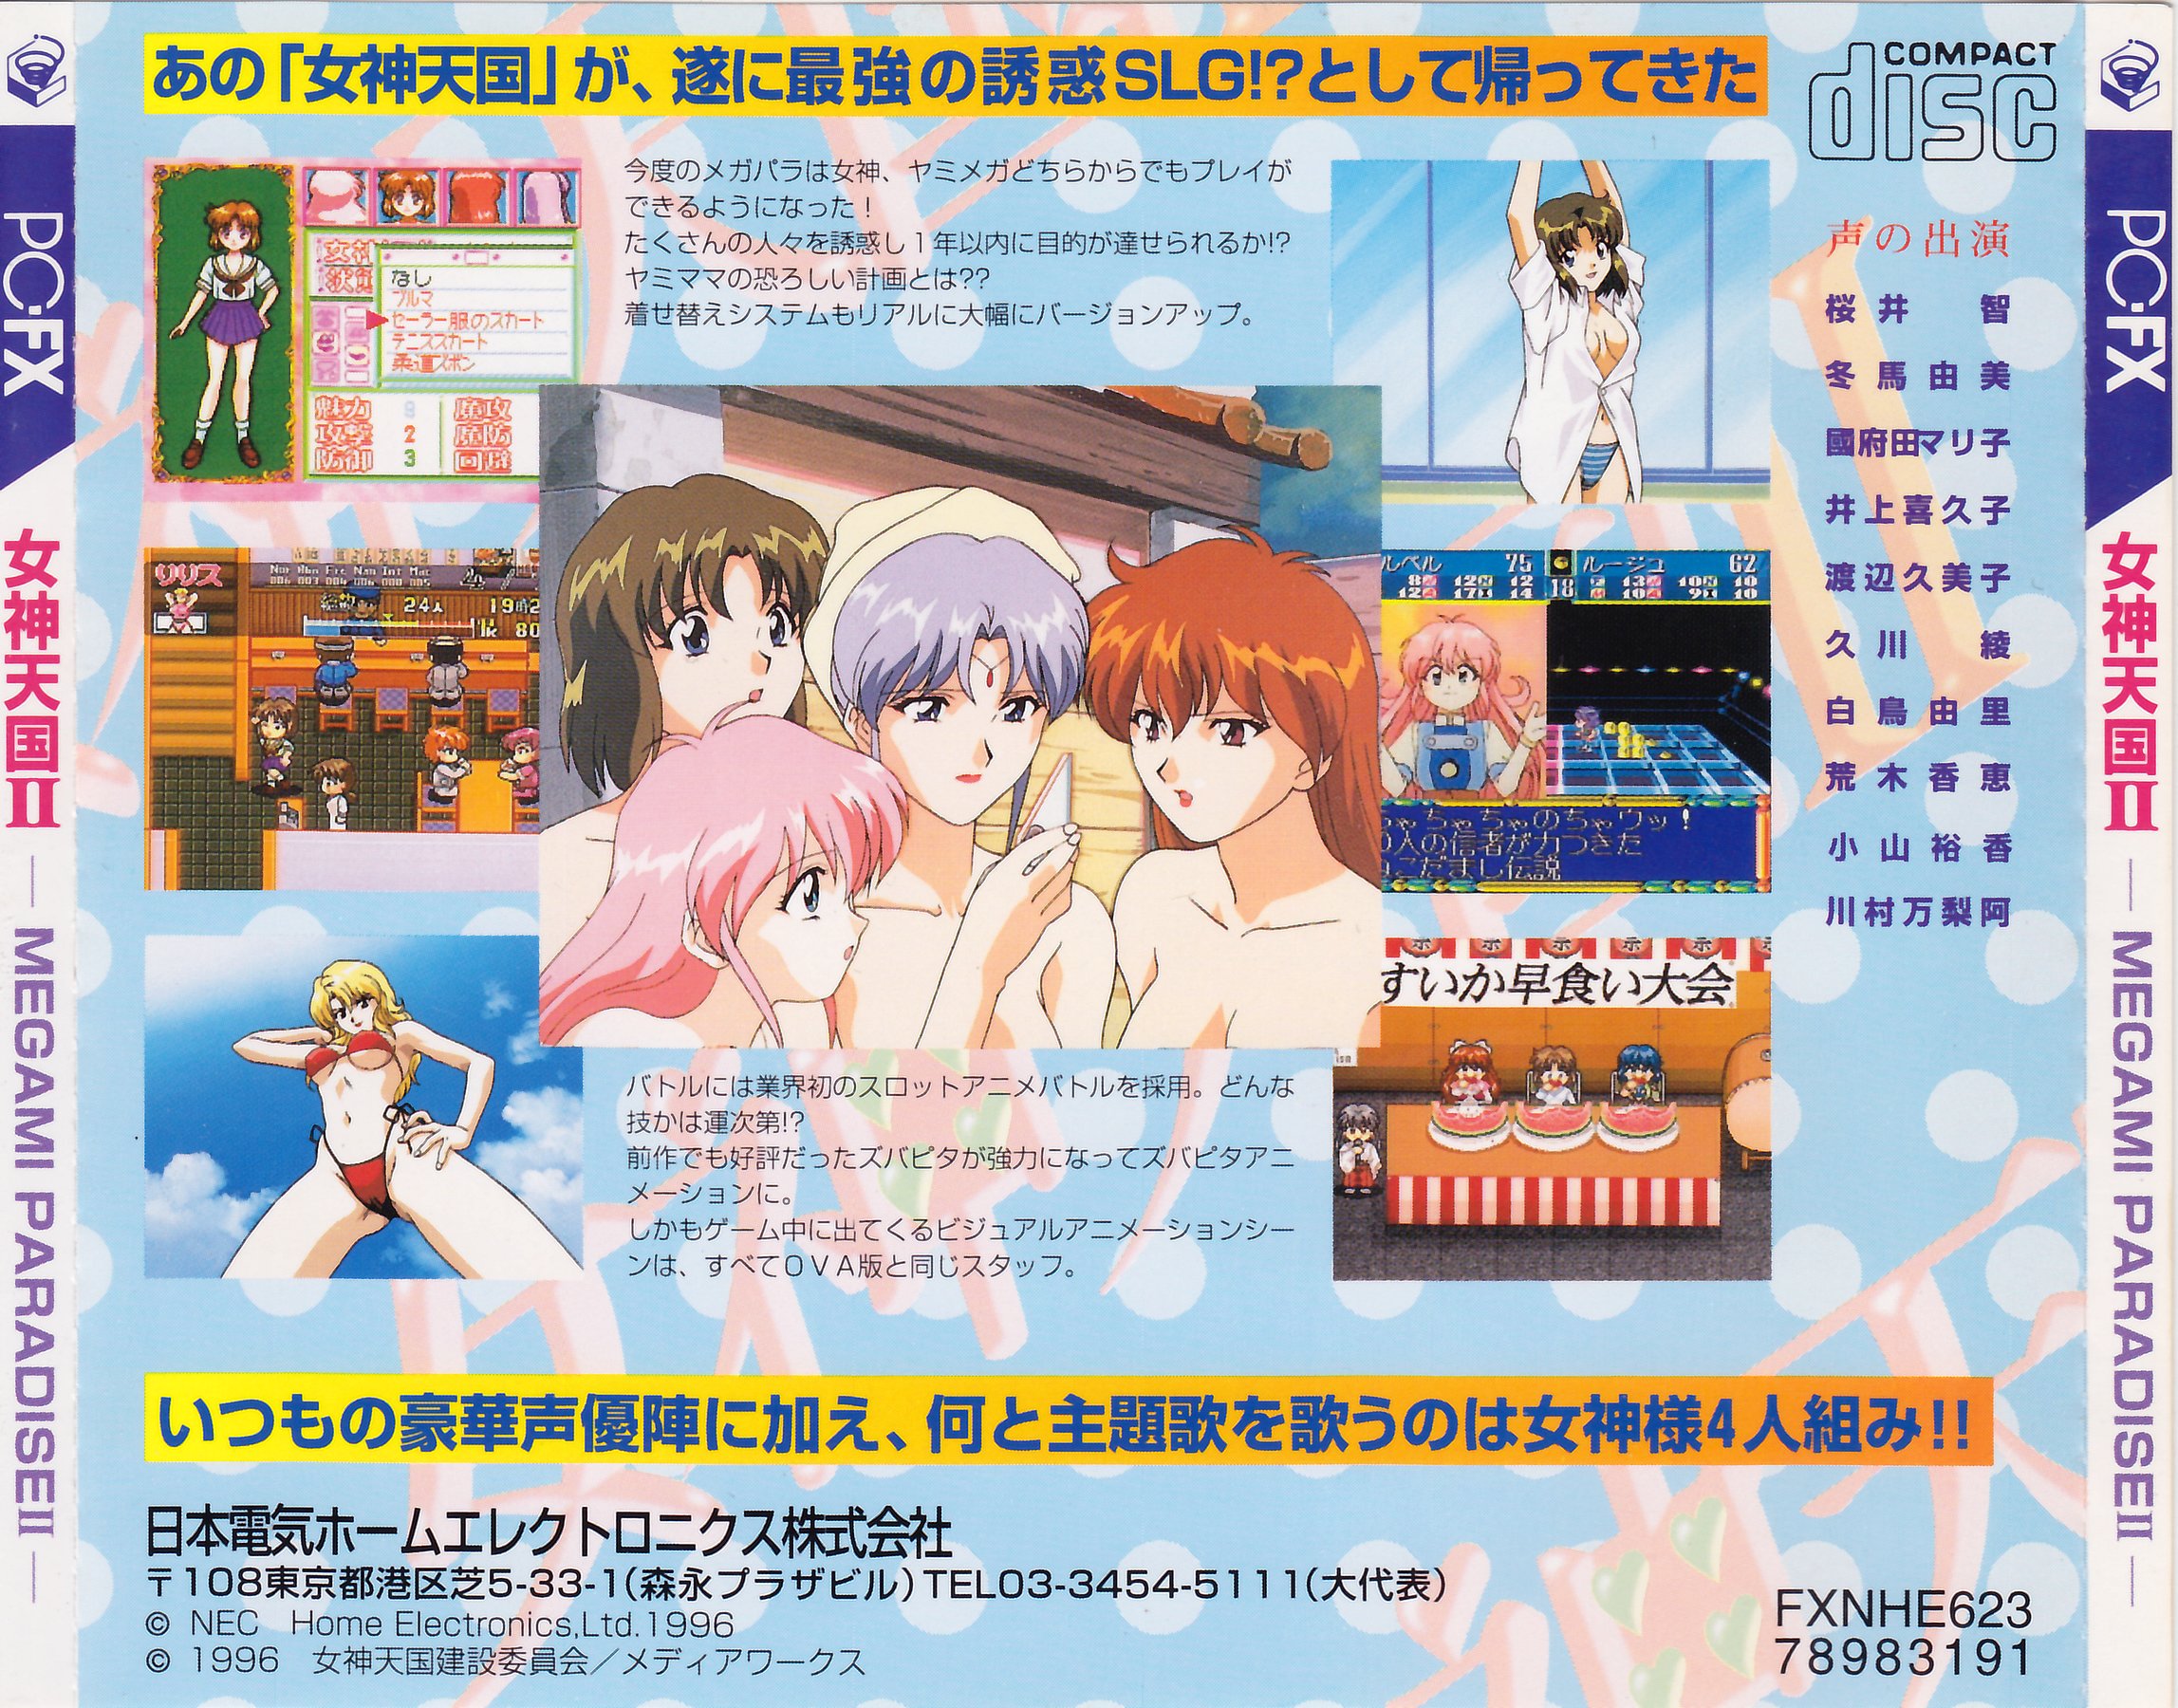 Megami Paradise 2 (Manual)(JP)(PC-FX) : NEC Home Electronics 